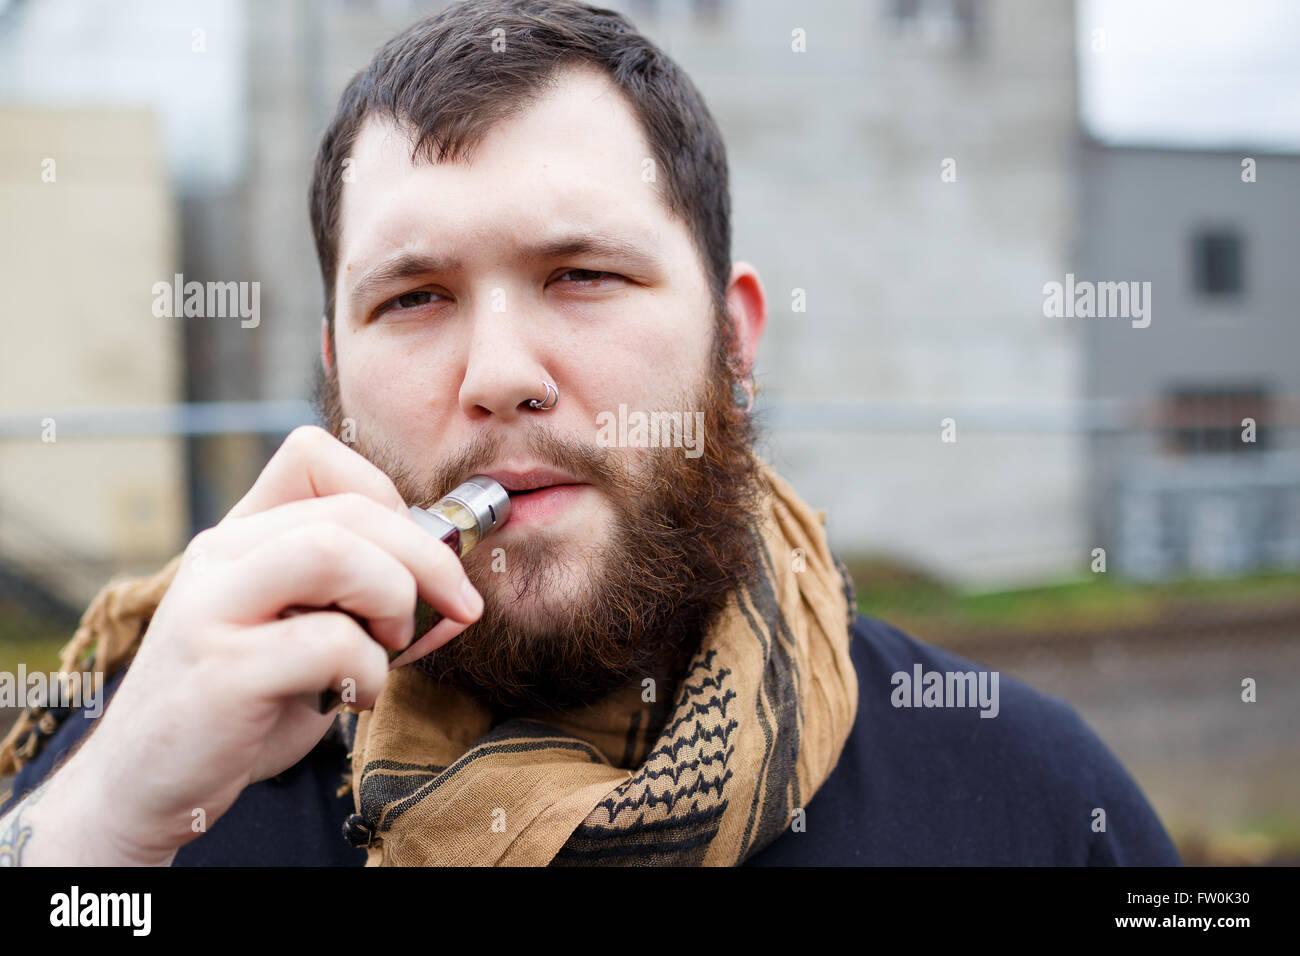 Urbaner Lifestyle Portrait von ein Mann Dampfen in einem städtischen Umfeld mit einem benutzerdefinierten Vape mod Gerät. Stockfoto